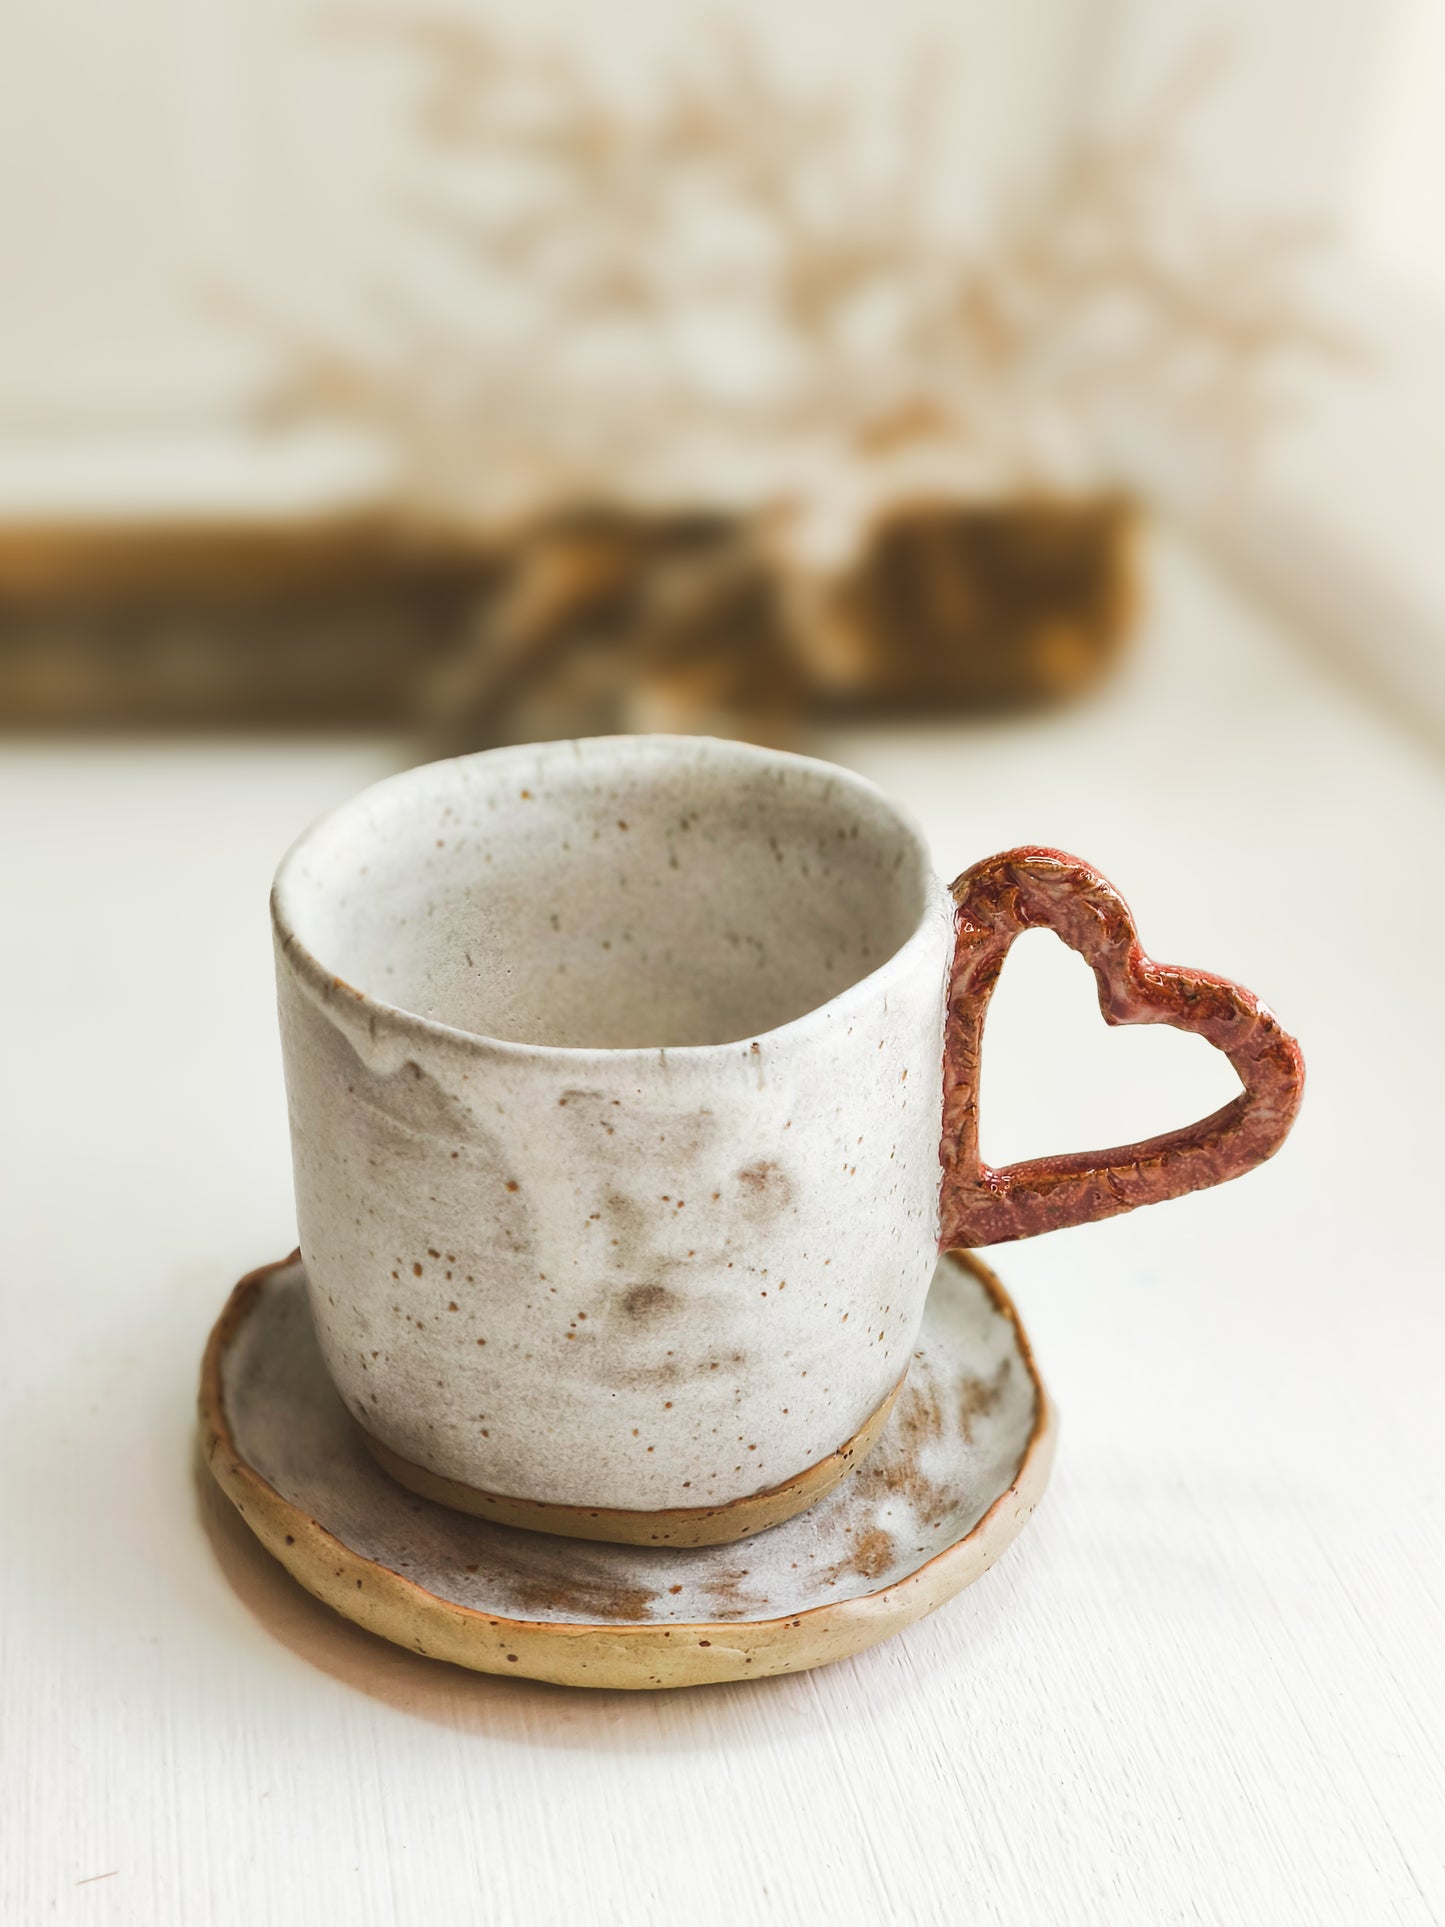 Kaffee- oder Teebecher aus Keramik mit herzförmigem Henkel